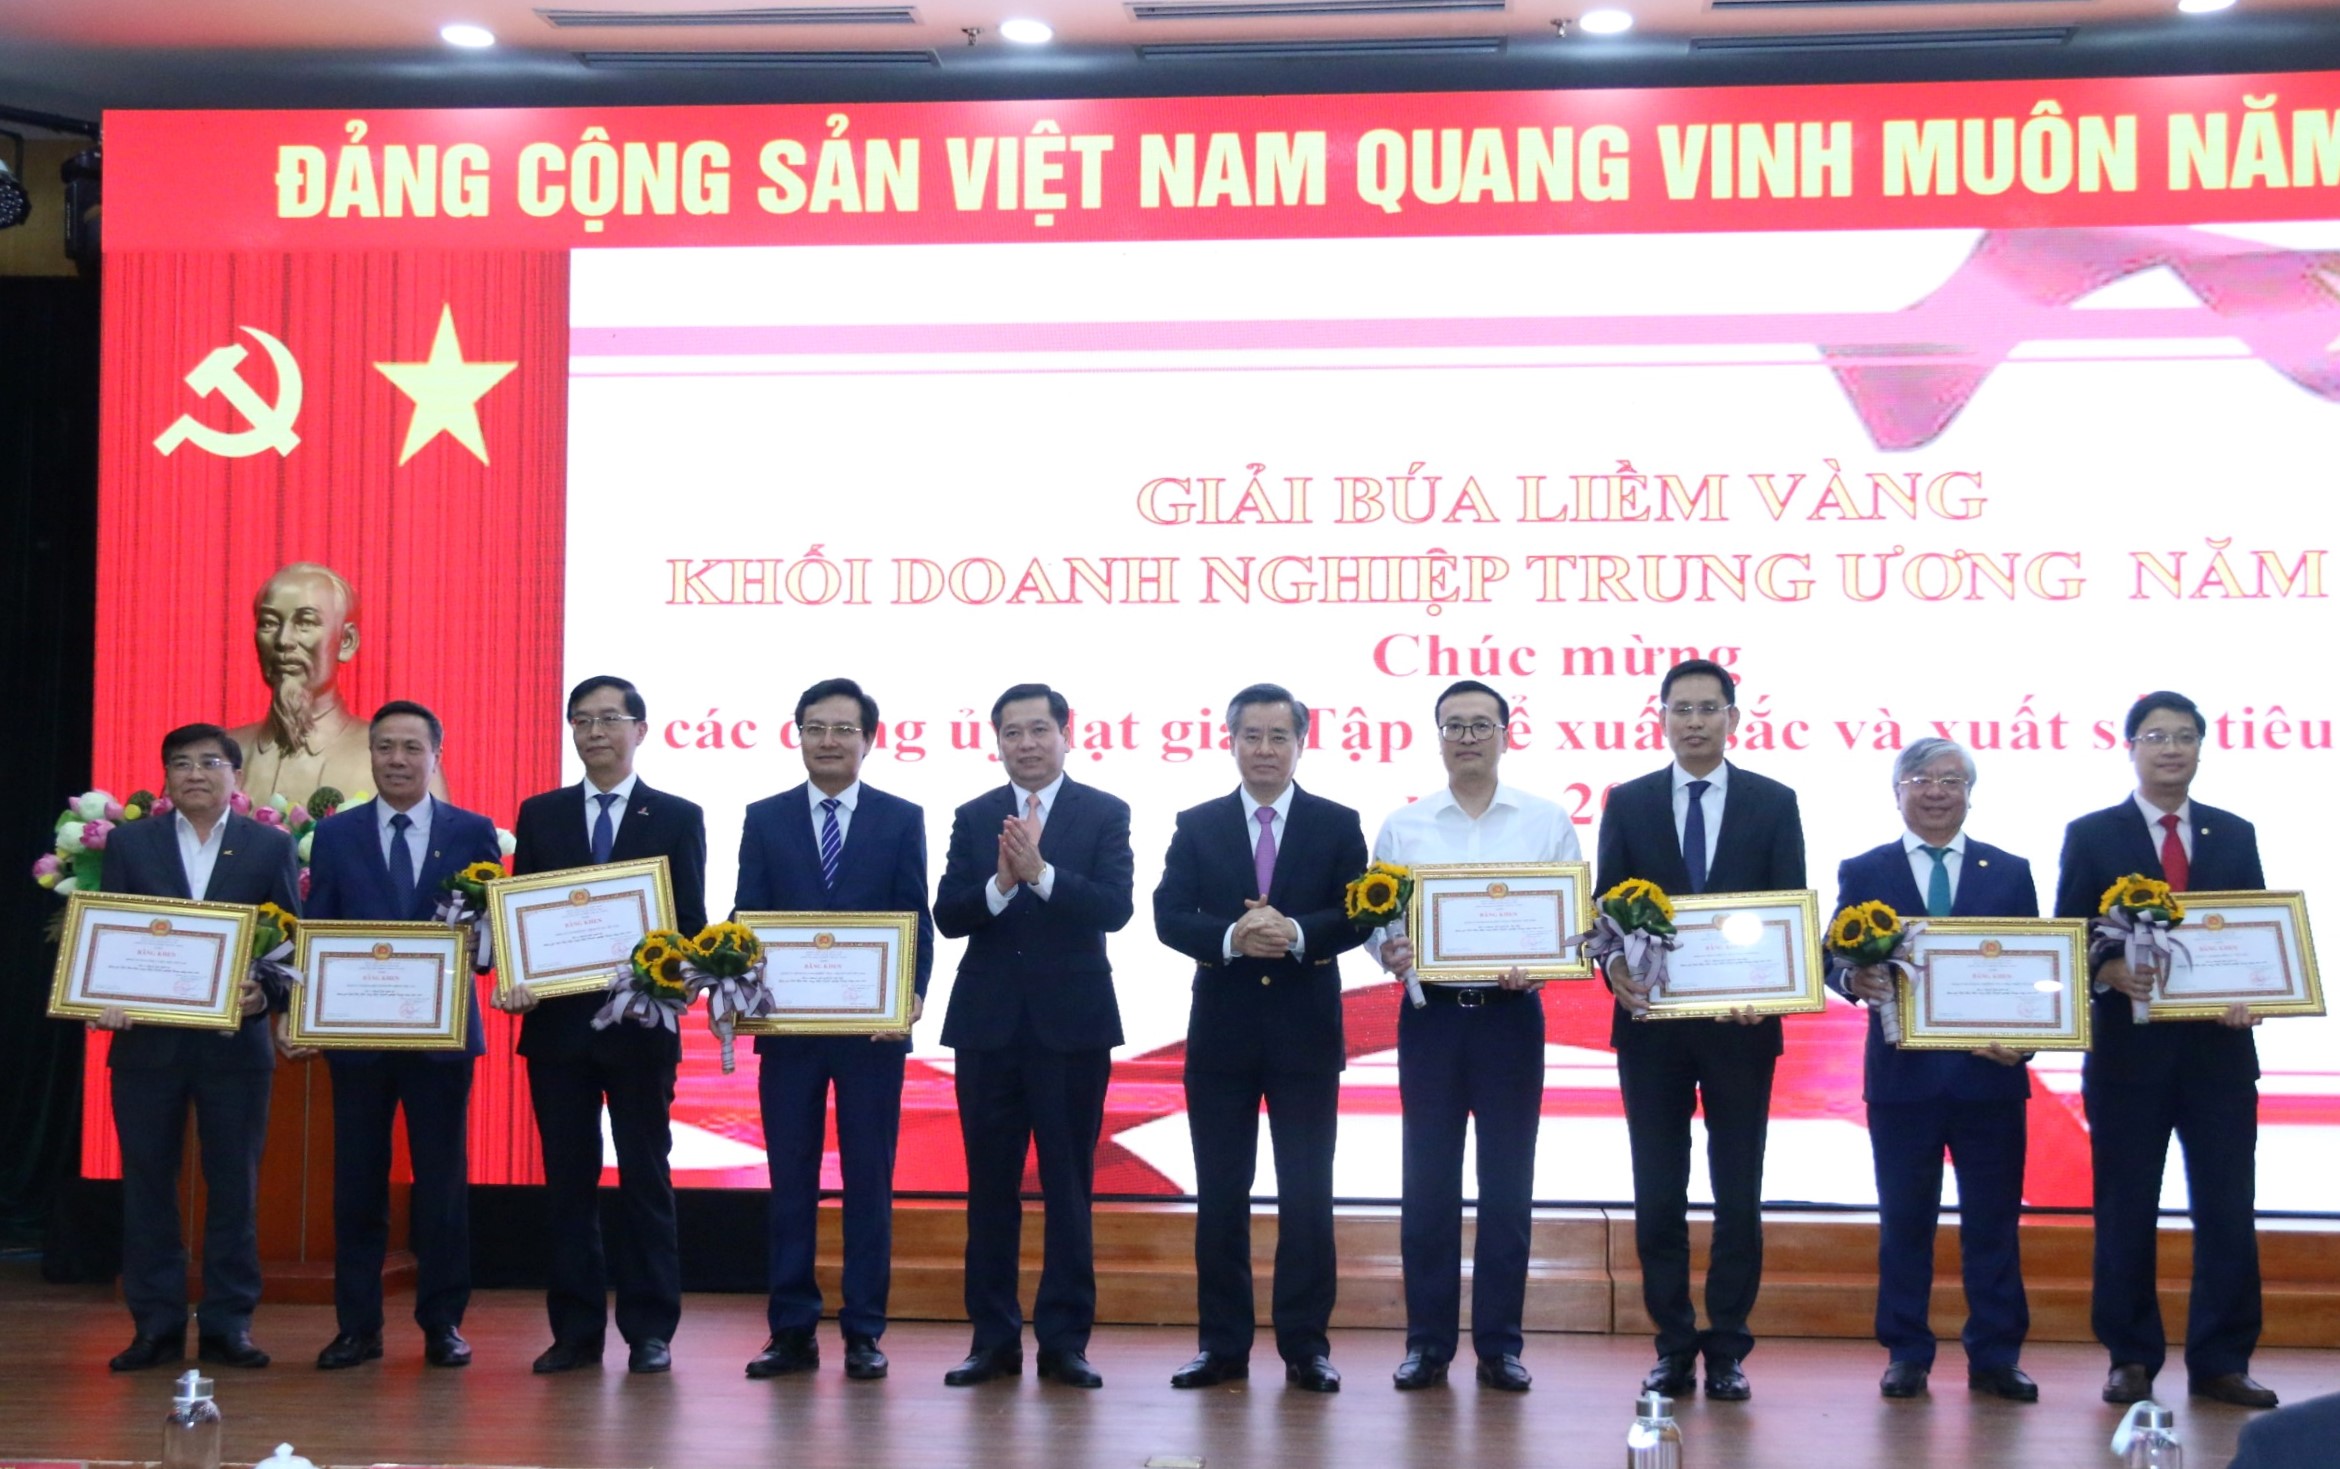 Đảng ủy Vietcombank được vinh danh là đơn vị có thành tích xuất sắc tiêu biểu trong tham gia Giải Búa liềm vàng Khối Doanh nghiệp Trung ương năm 2022